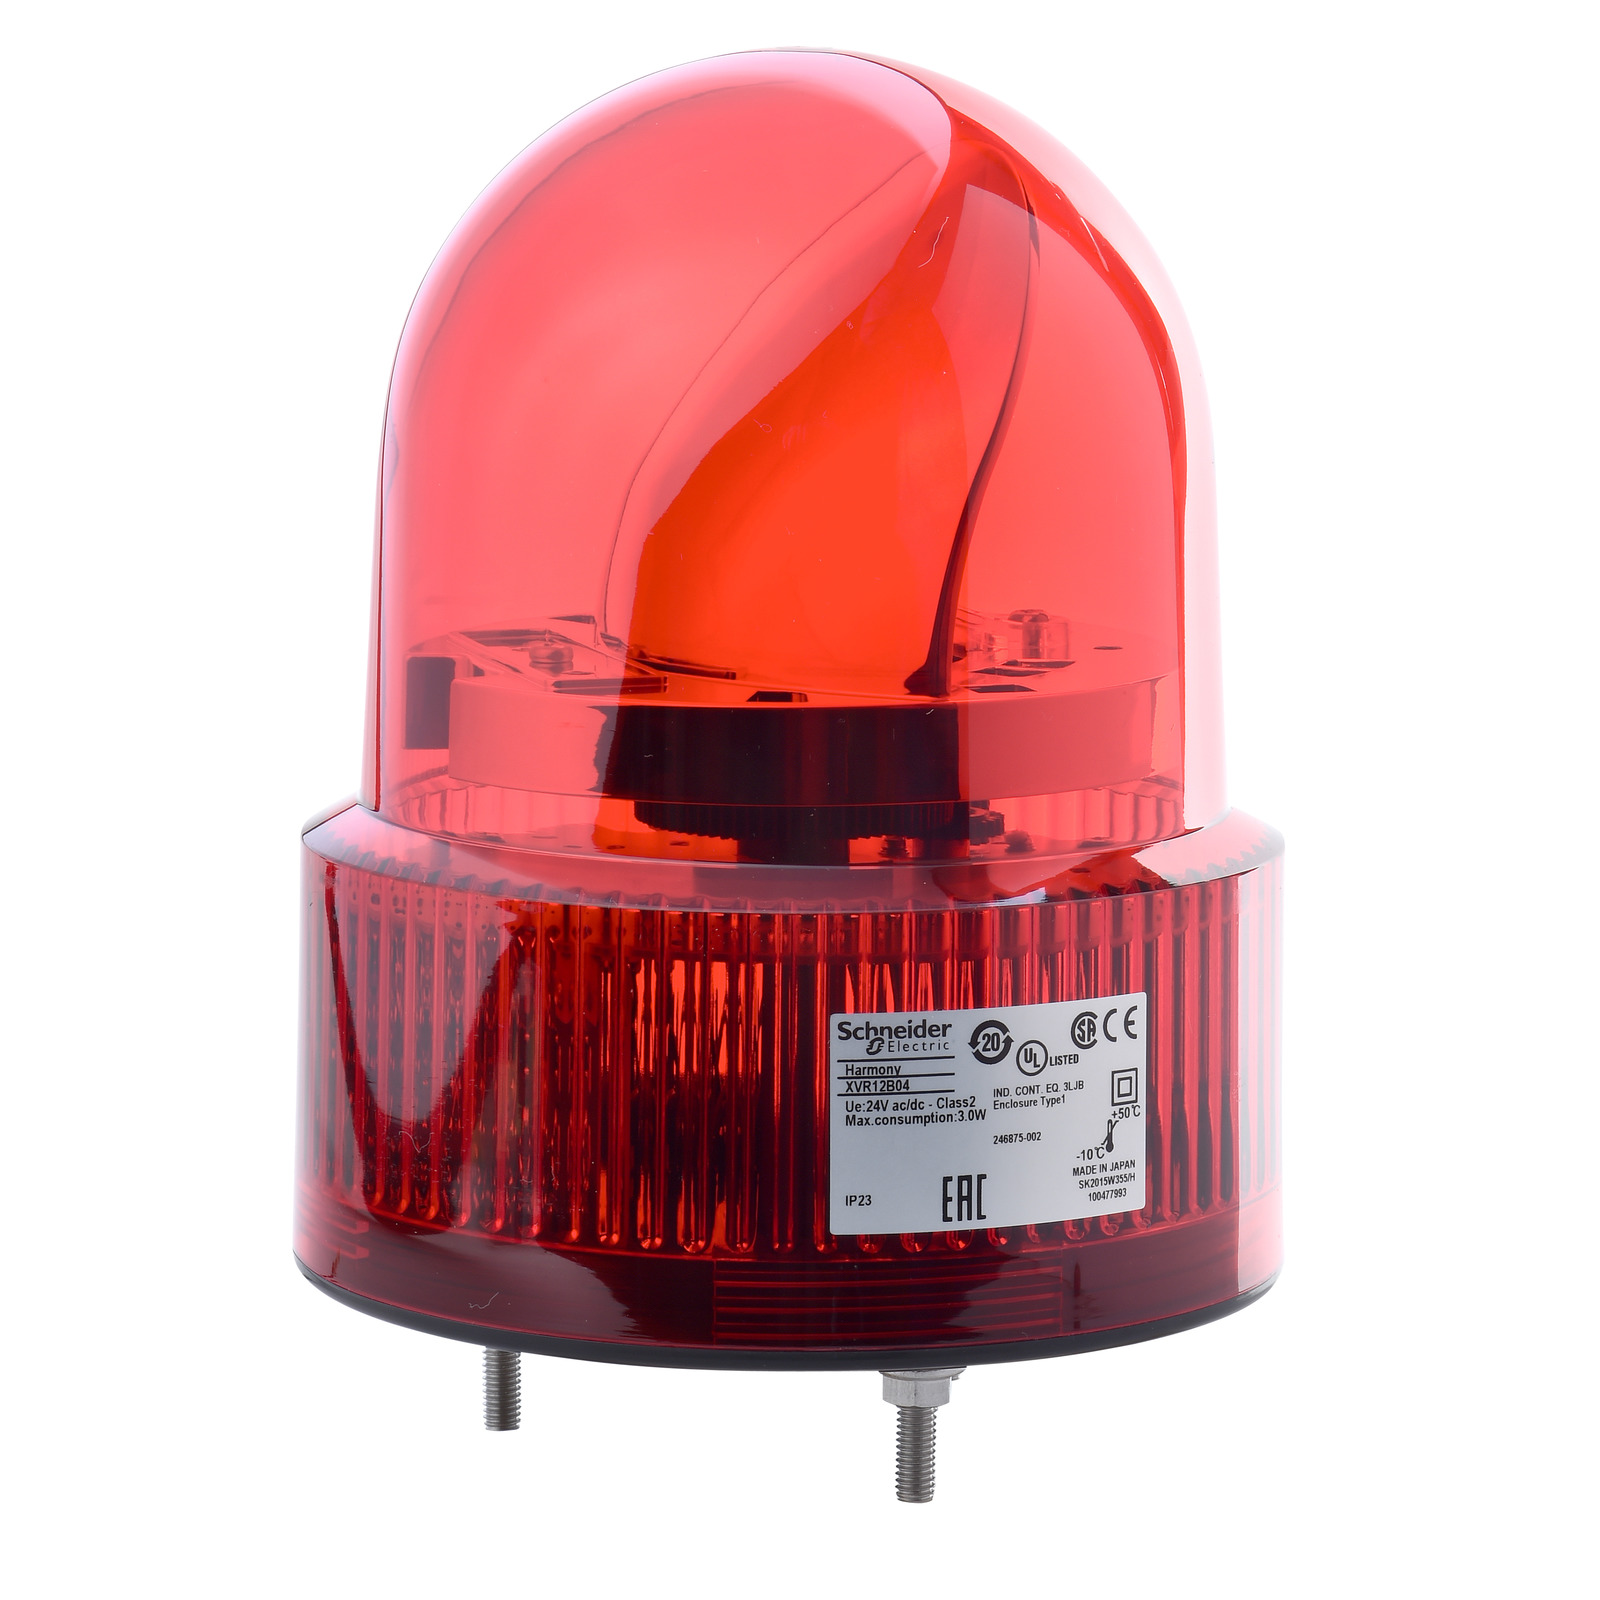 HARMONY XVR forgótükrös jelzőfény LED-es O120 IP23 piros 24V AC/DC